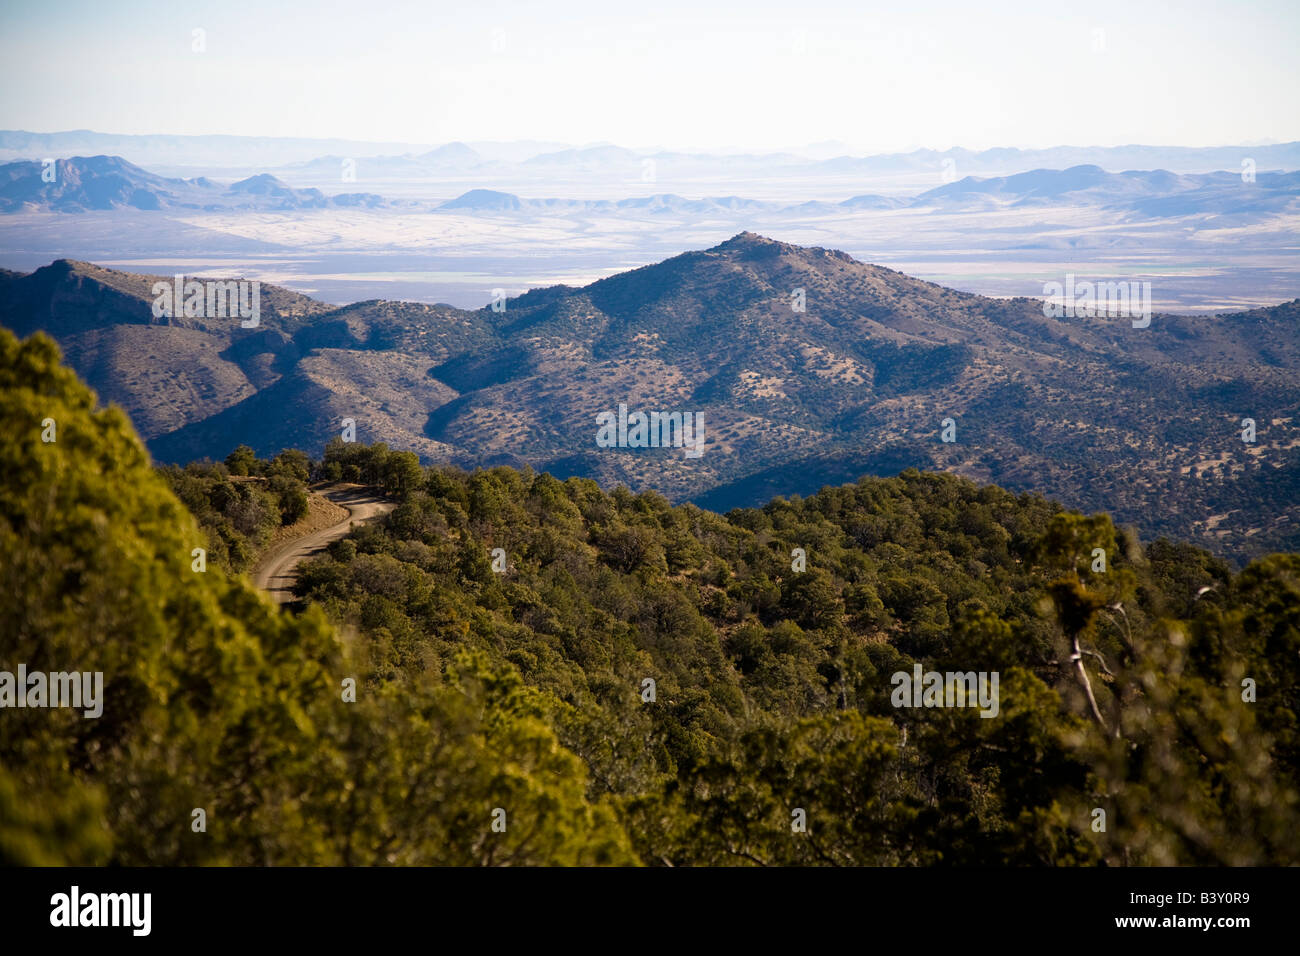 Chiricahua National Monument isoliert Bergketten bekannt, eine Sky-Insel und die umliegenden Wiesen bekannt als Meer Arizona USA Stockfoto